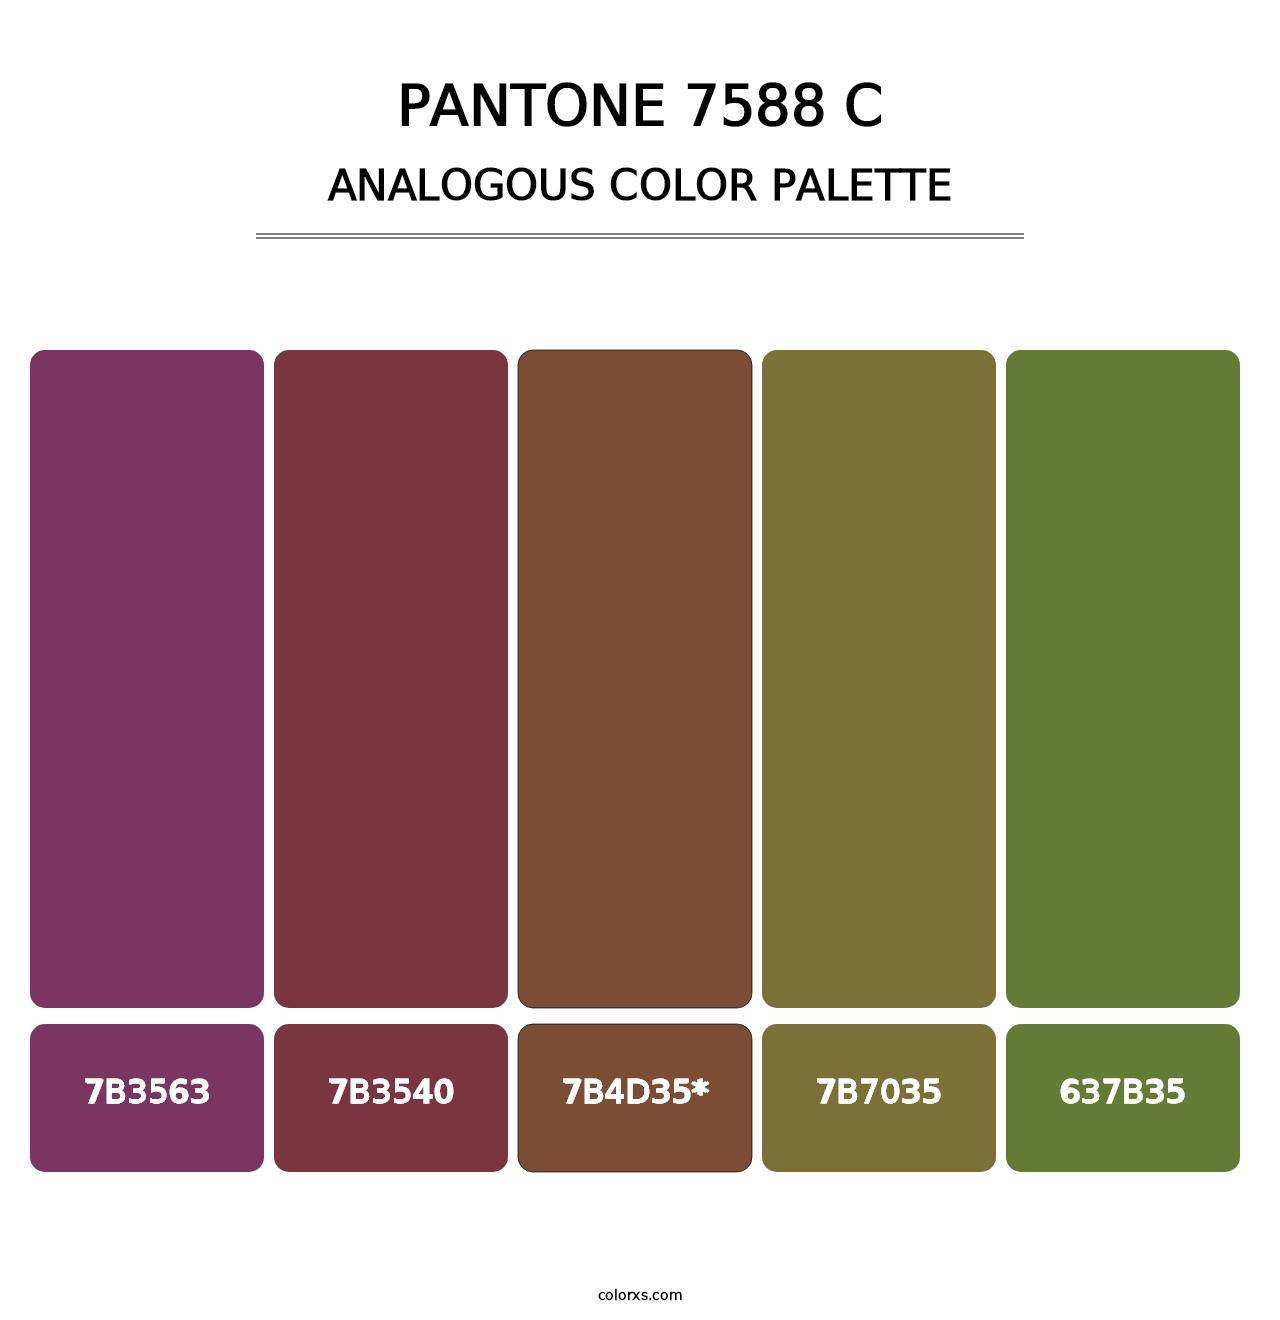 PANTONE 7588 C - Analogous Color Palette